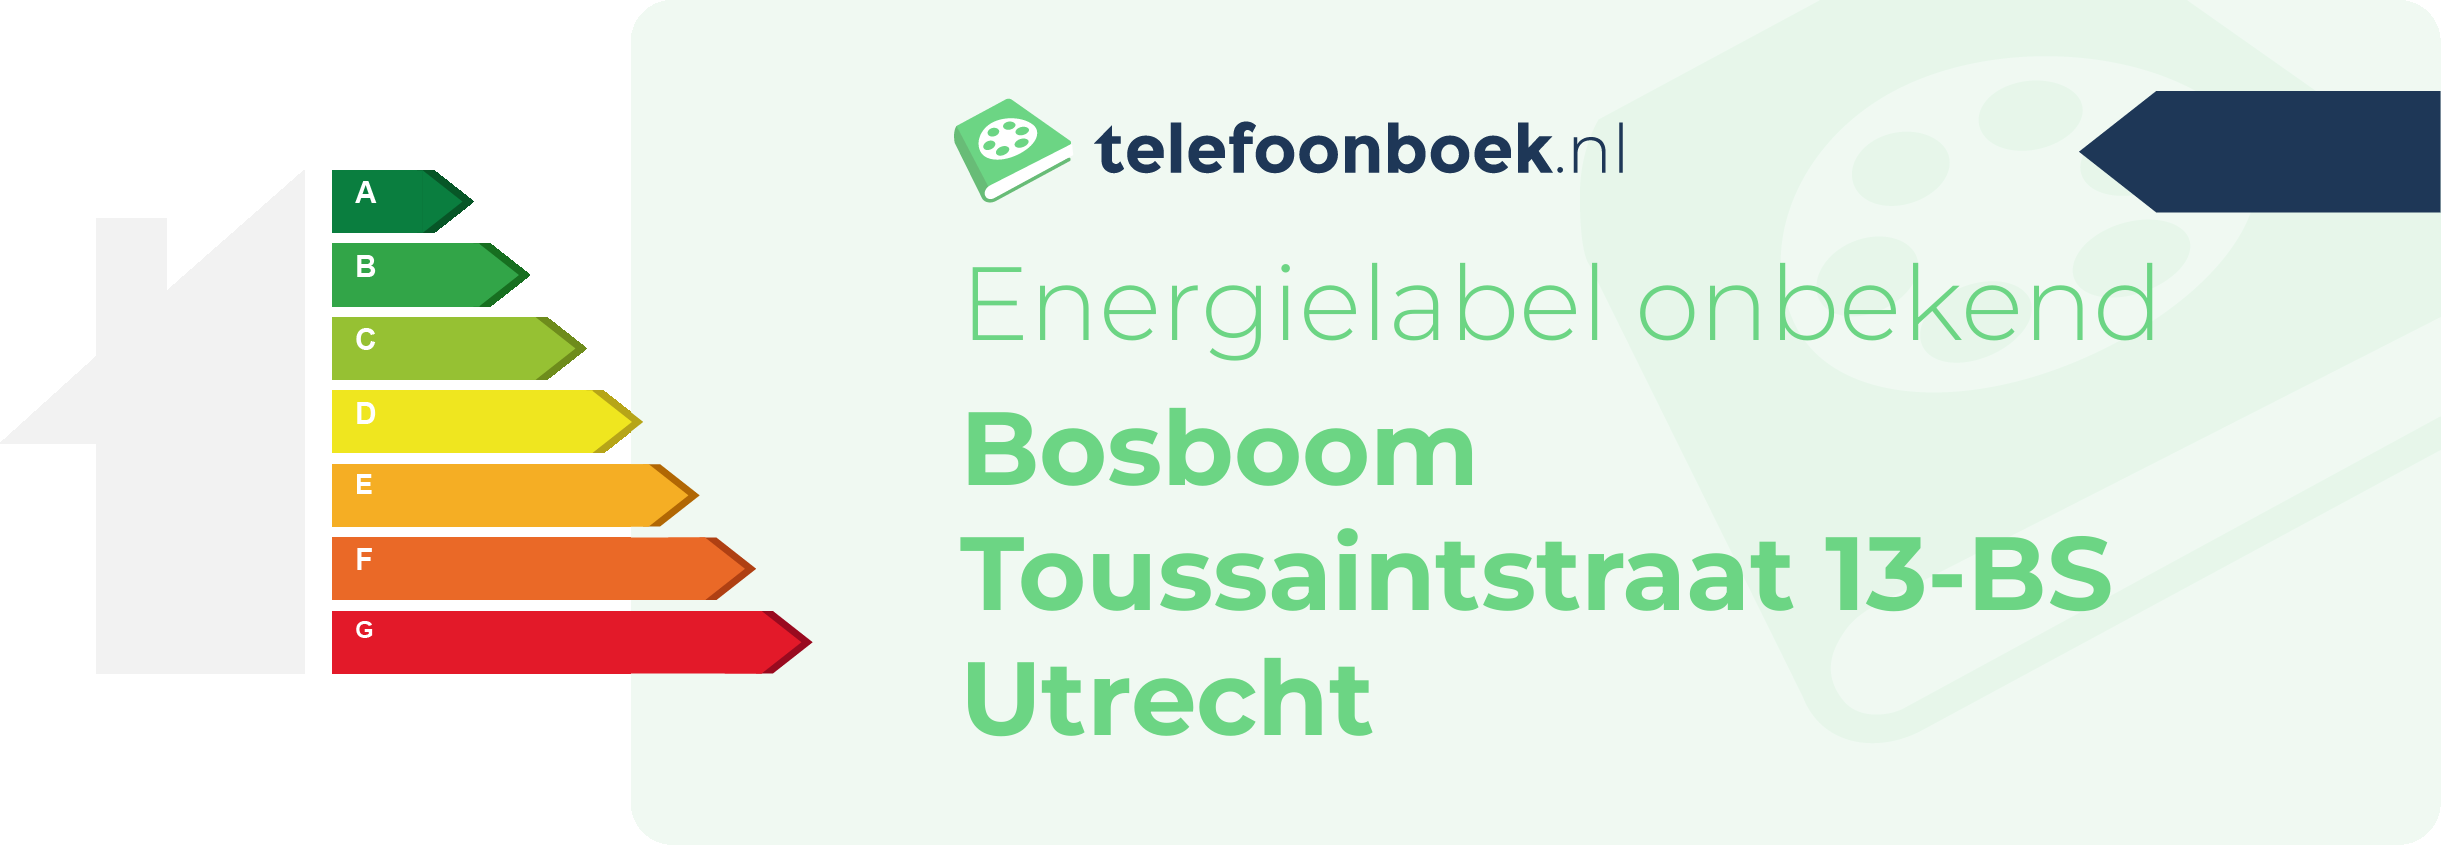 Energielabel Bosboom Toussaintstraat 13-BS Utrecht